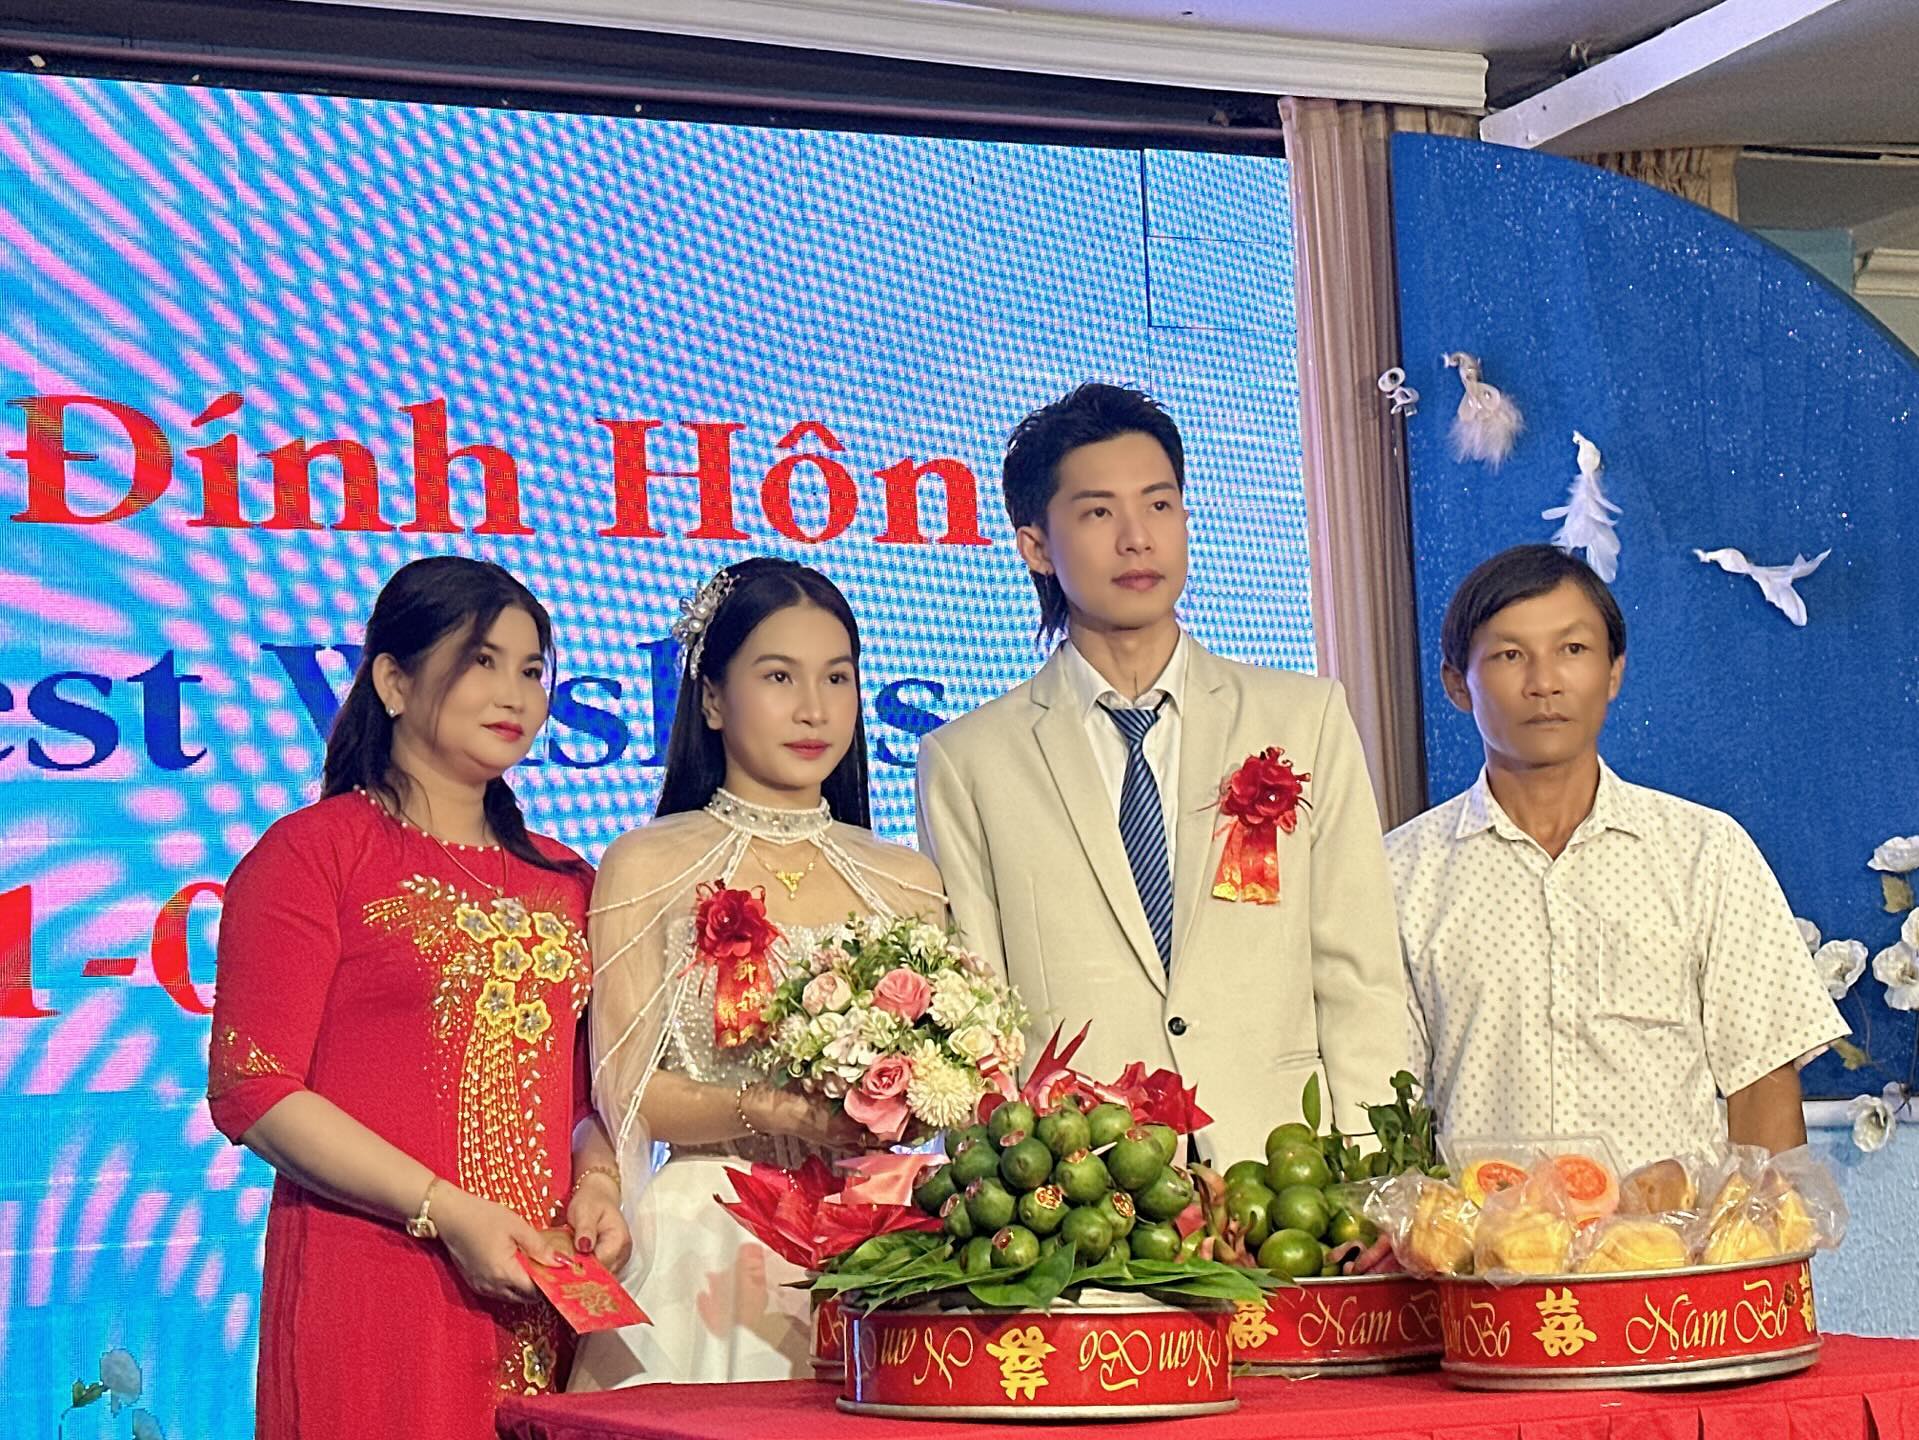 台灣40歲型男髮型師（右二）花70萬元迎娶18歲越南妻子（右三），引起熱烈討論。圖/翻攝nt_nickman7381 Threads